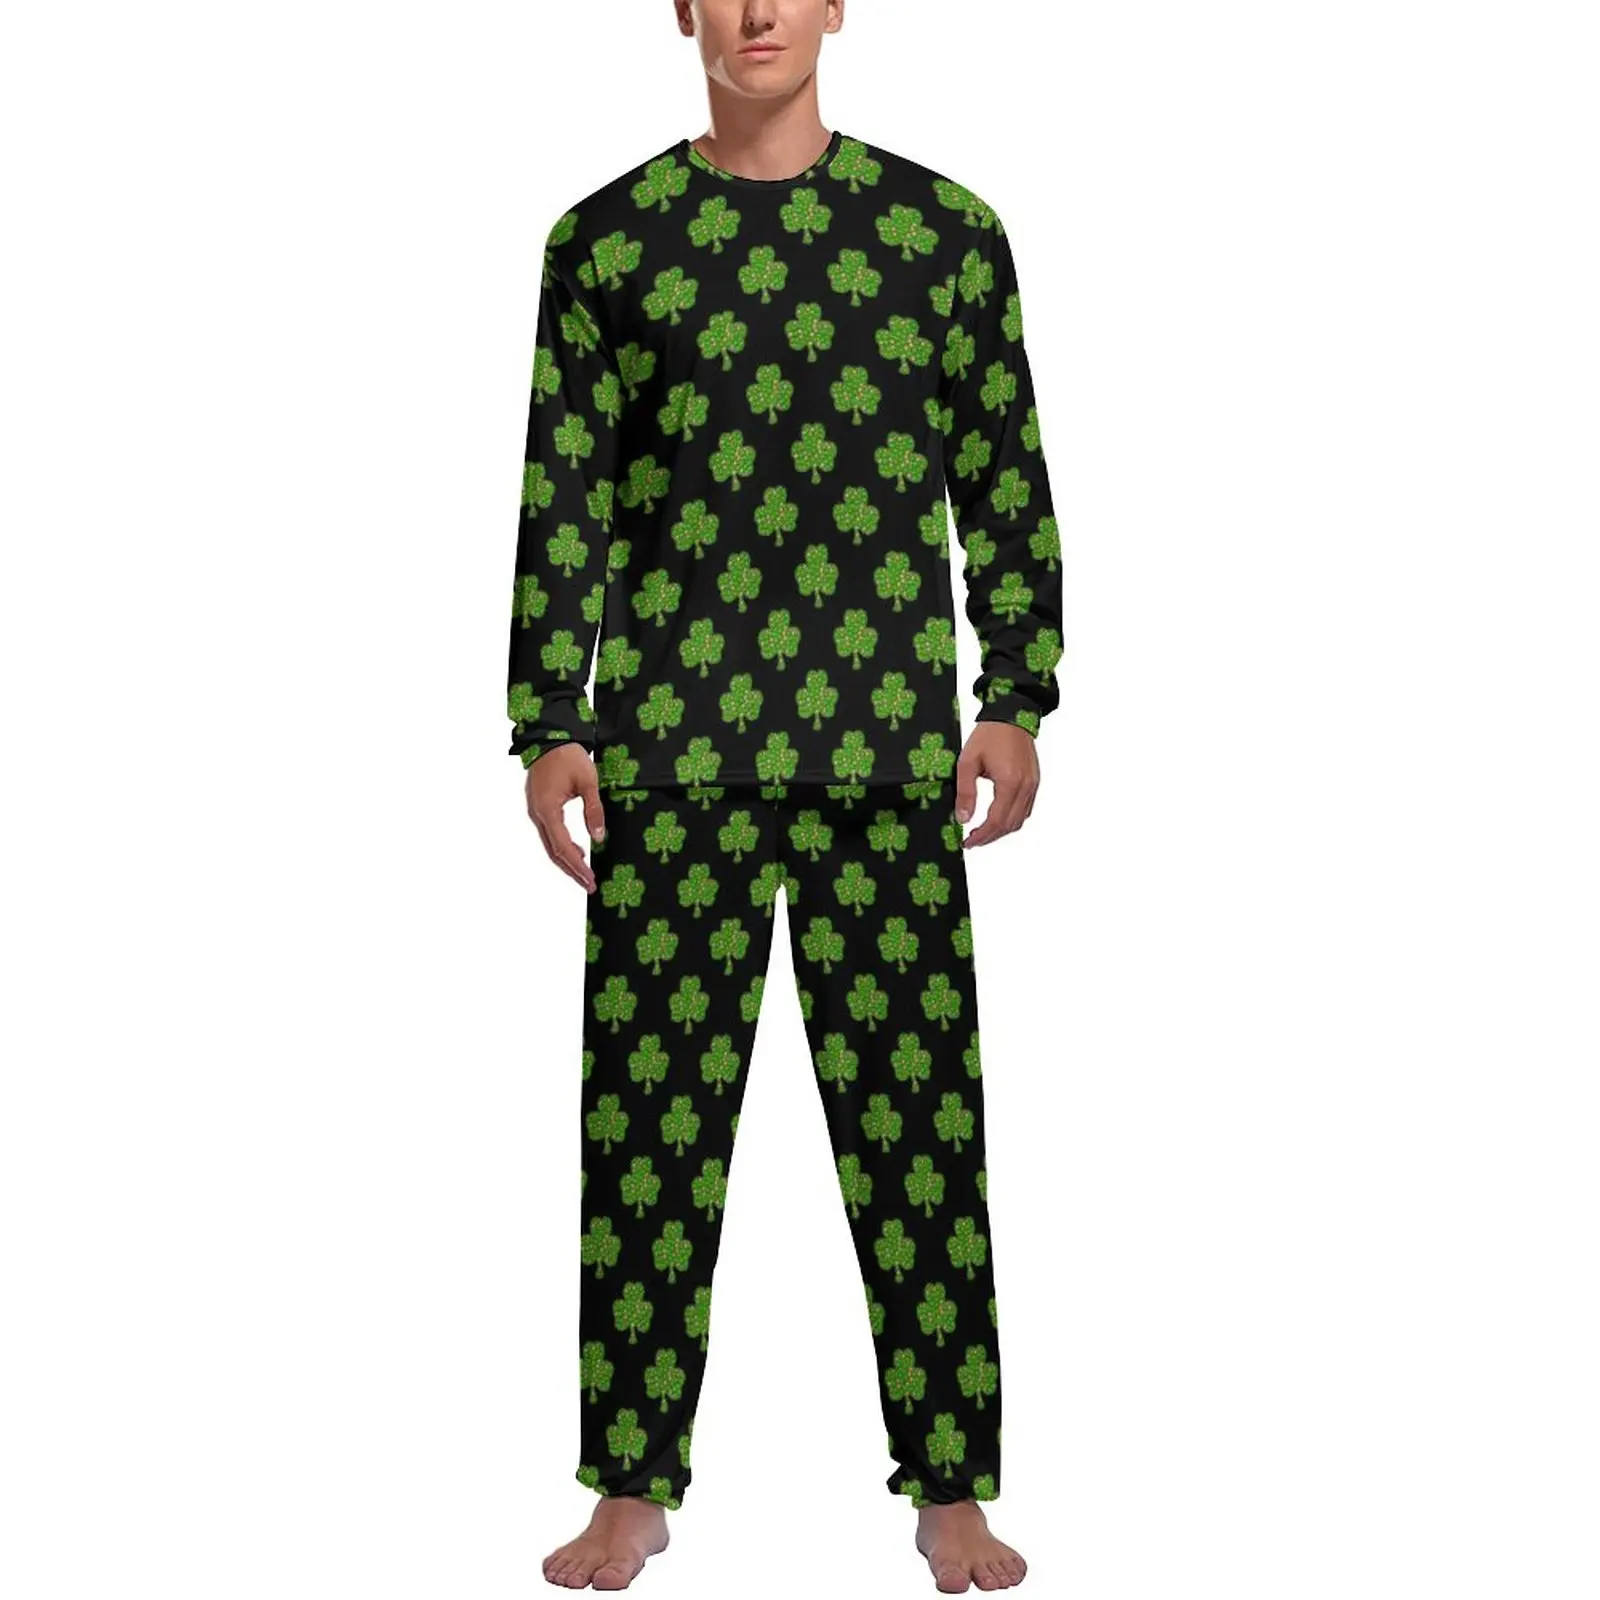 

Женская Осенняя пижама с принтом зеленых листьев, домашний костюм, мужские 2 предмета, милые пижамные комплекты с графическим рисунком и длинным рукавом